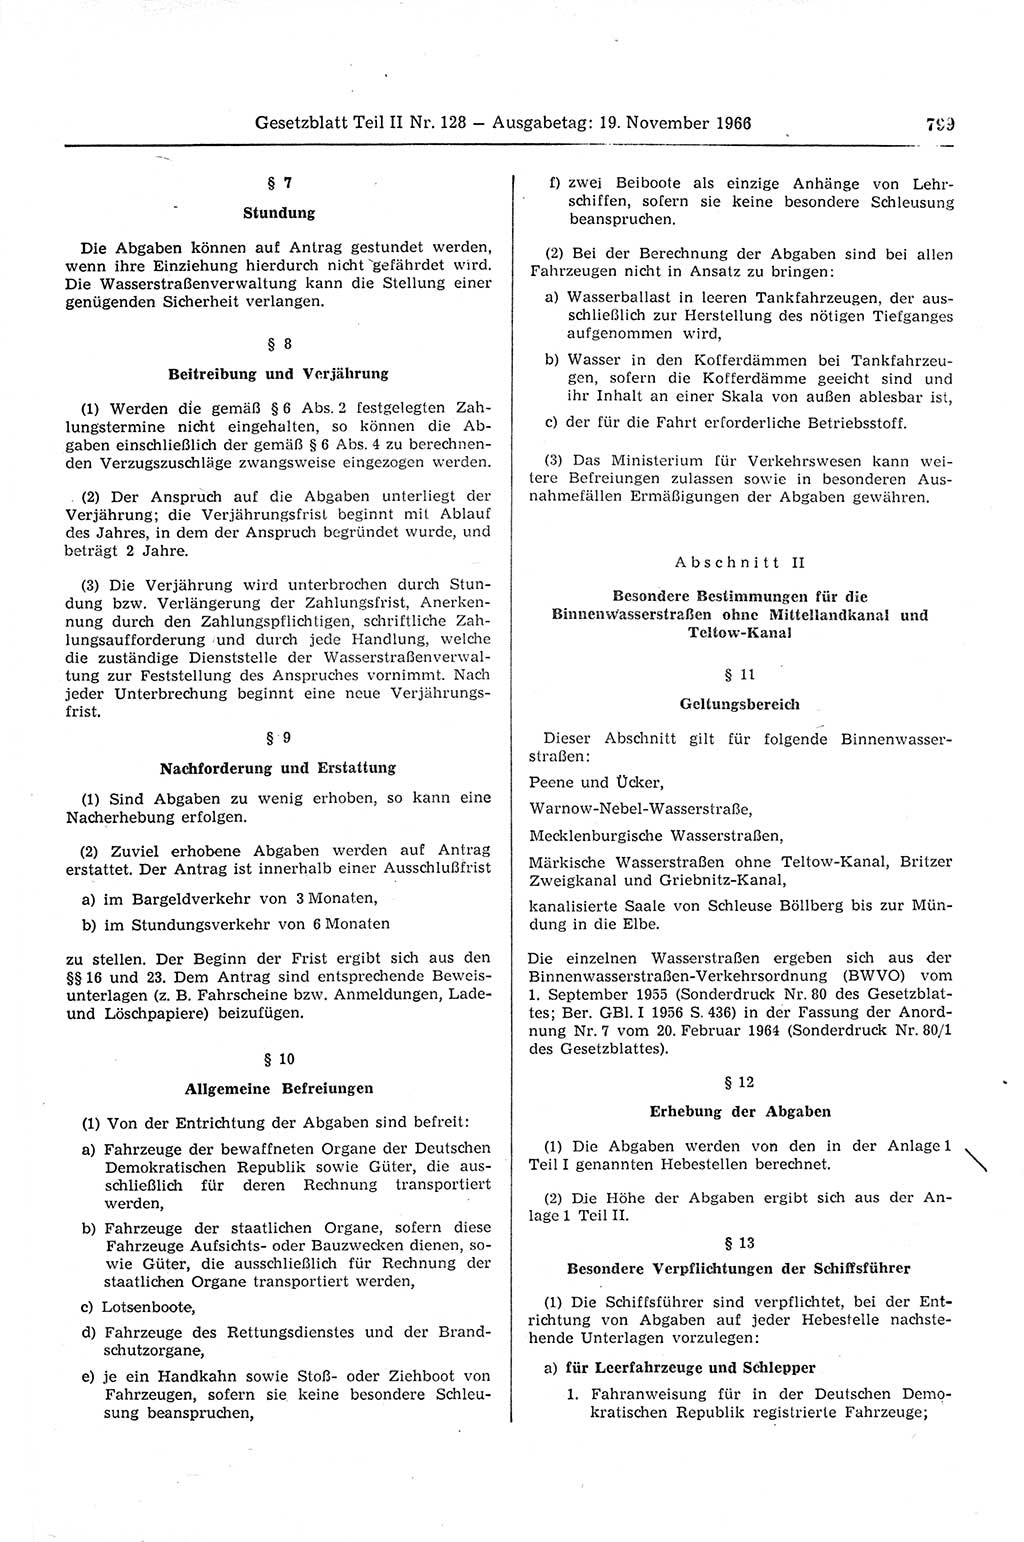 Gesetzblatt (GBl.) der Deutschen Demokratischen Republik (DDR) Teil ⅠⅠ 1966, Seite 799 (GBl. DDR ⅠⅠ 1966, S. 799)